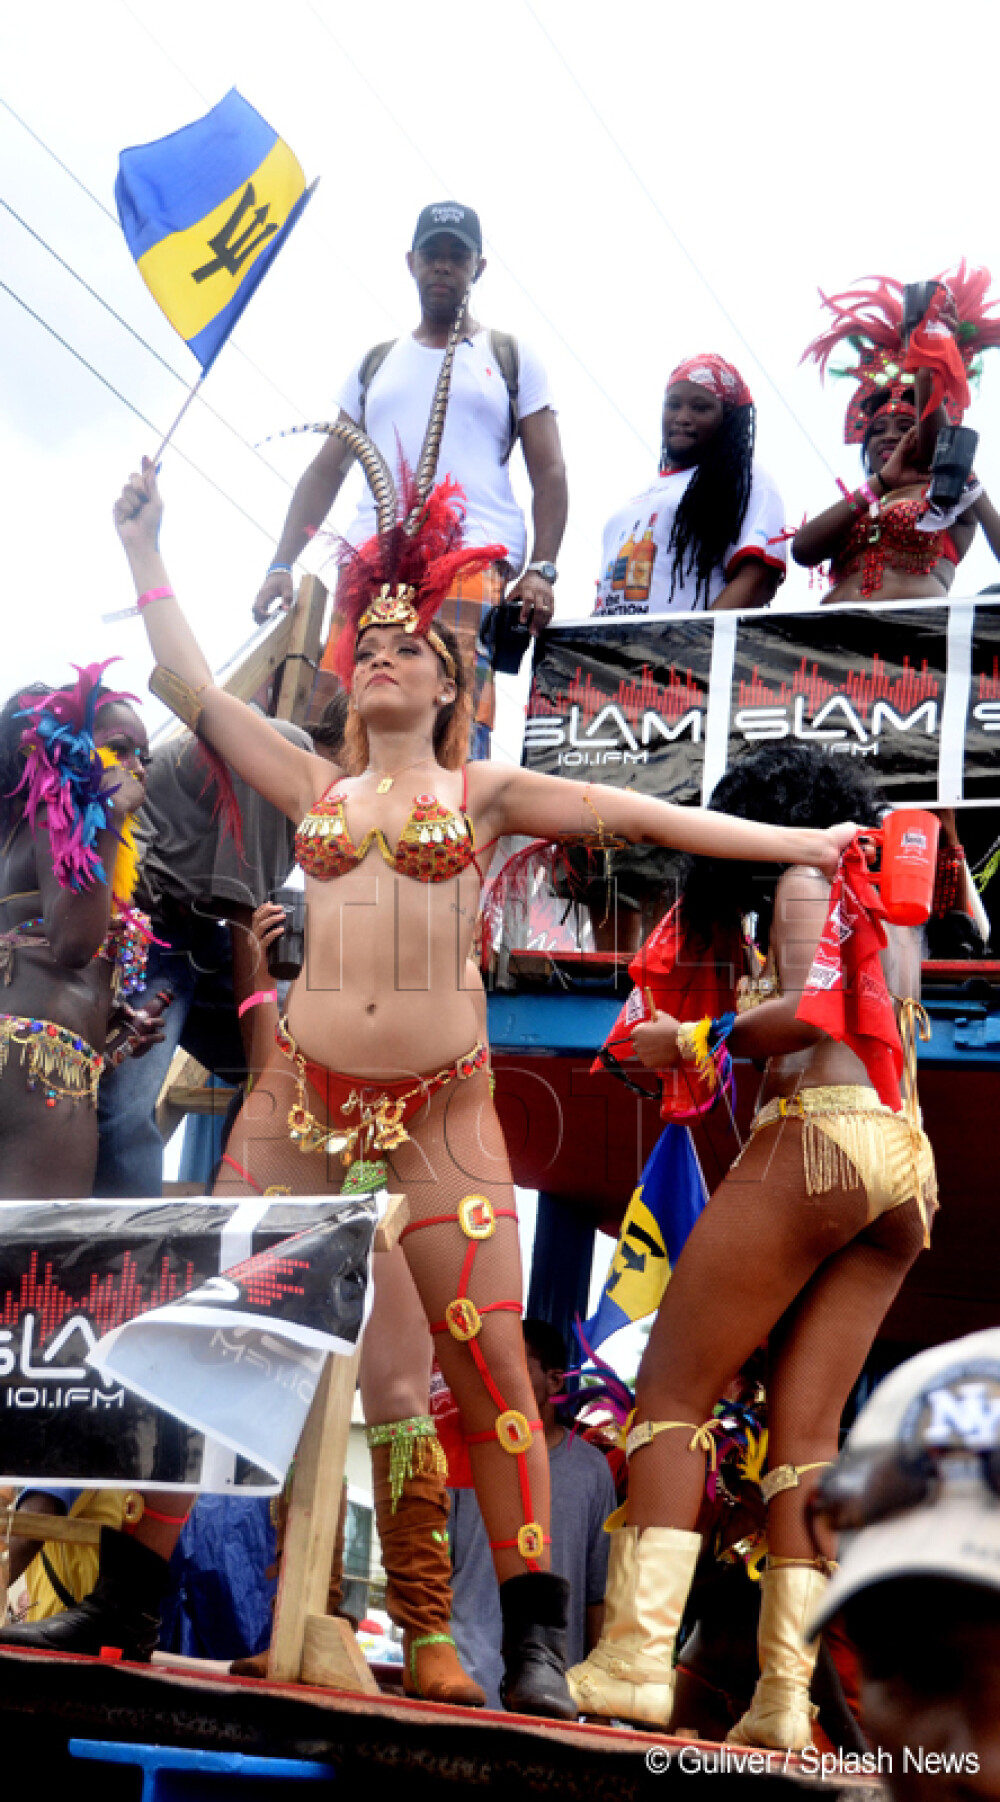 Fara inhibitii. Rihanna incita imaginatia barbatilor, la carnavalul din Barbados. GALERIE FOTO - Imaginea 2